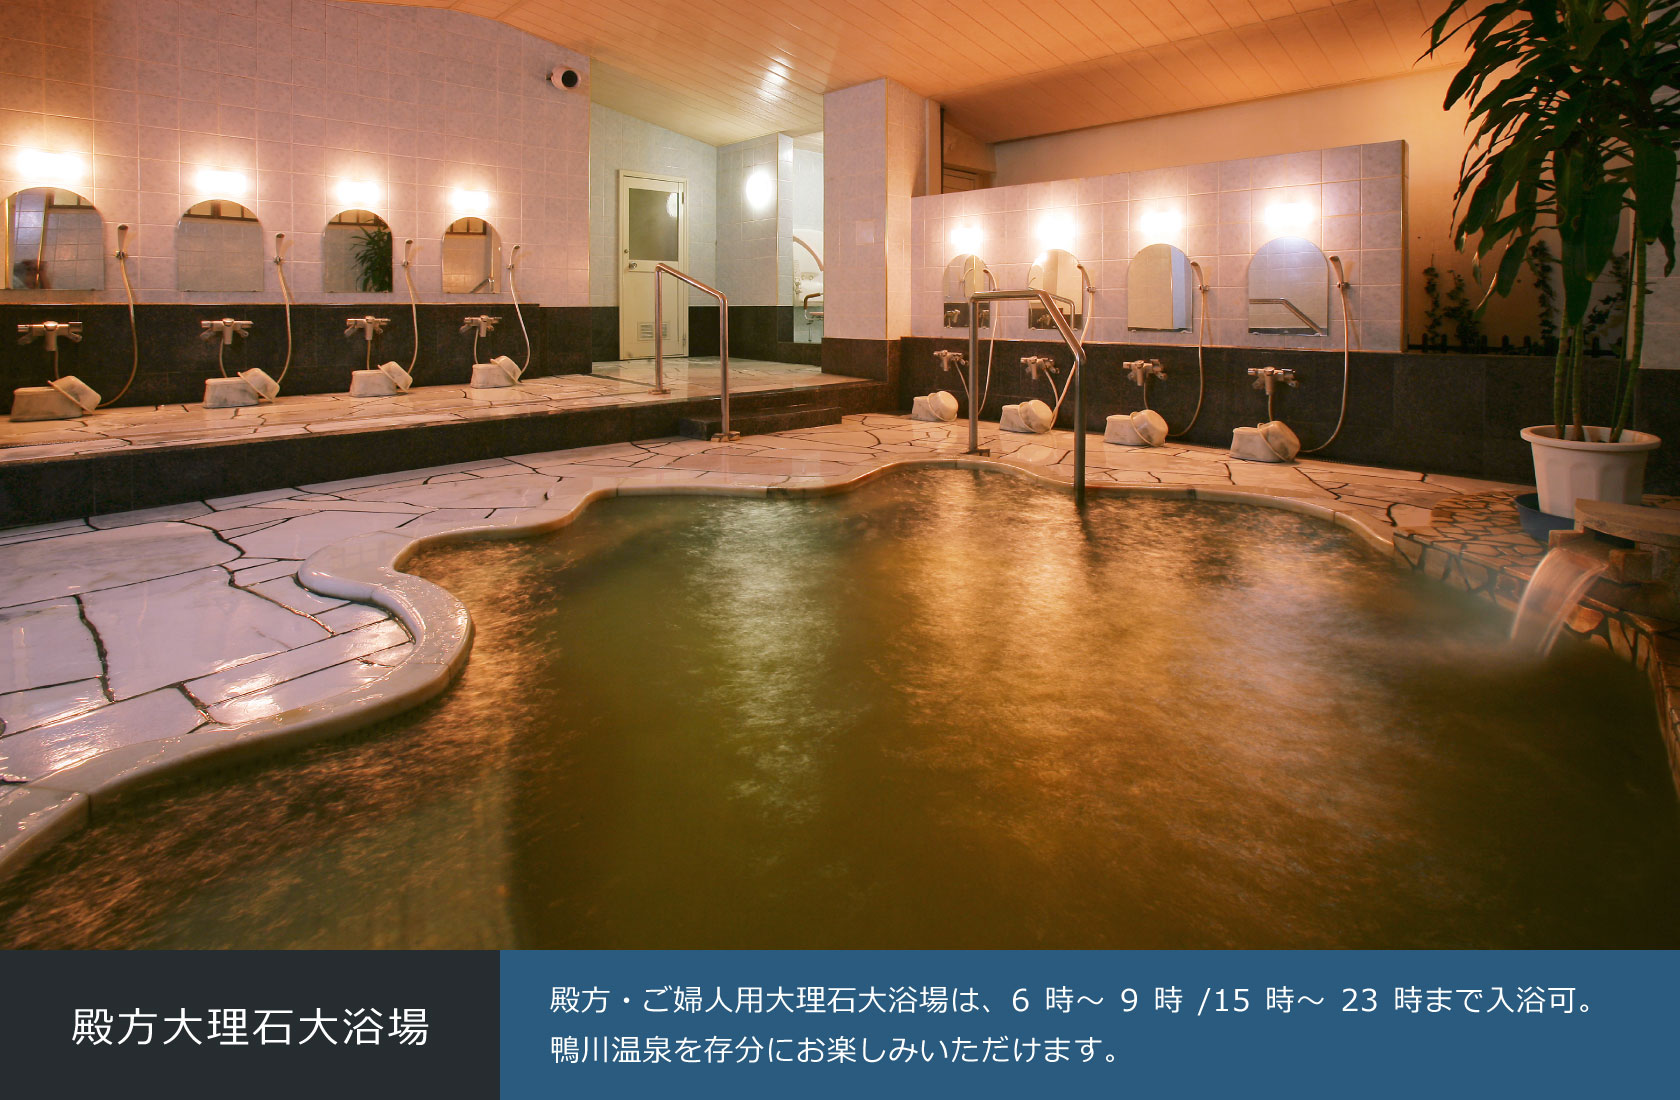 殿方大理石大浴場 殿方・ご婦人用大理石大浴場は、6時～9時/15時～23時まで入浴可。鴨川温泉を存分にお楽しみいただけます。